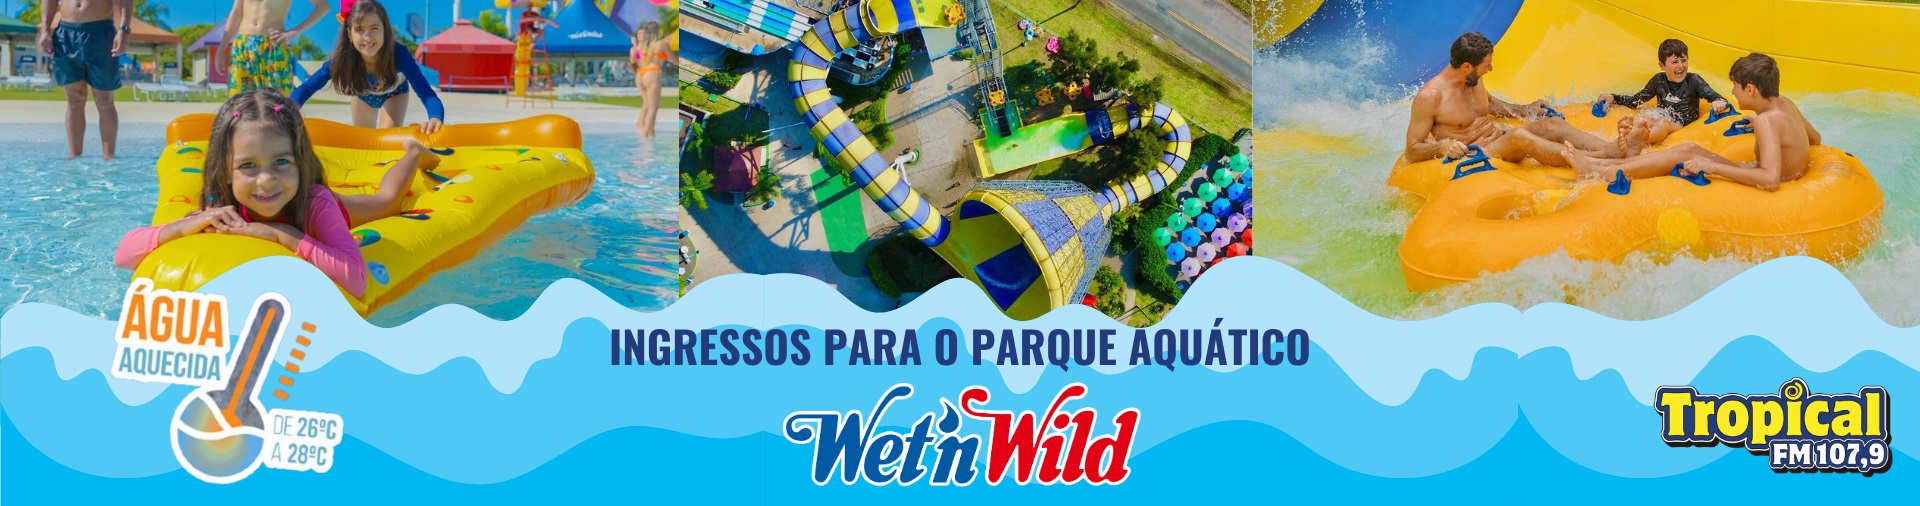 Banner Ingressos para o parque aquático Wet'n Wild